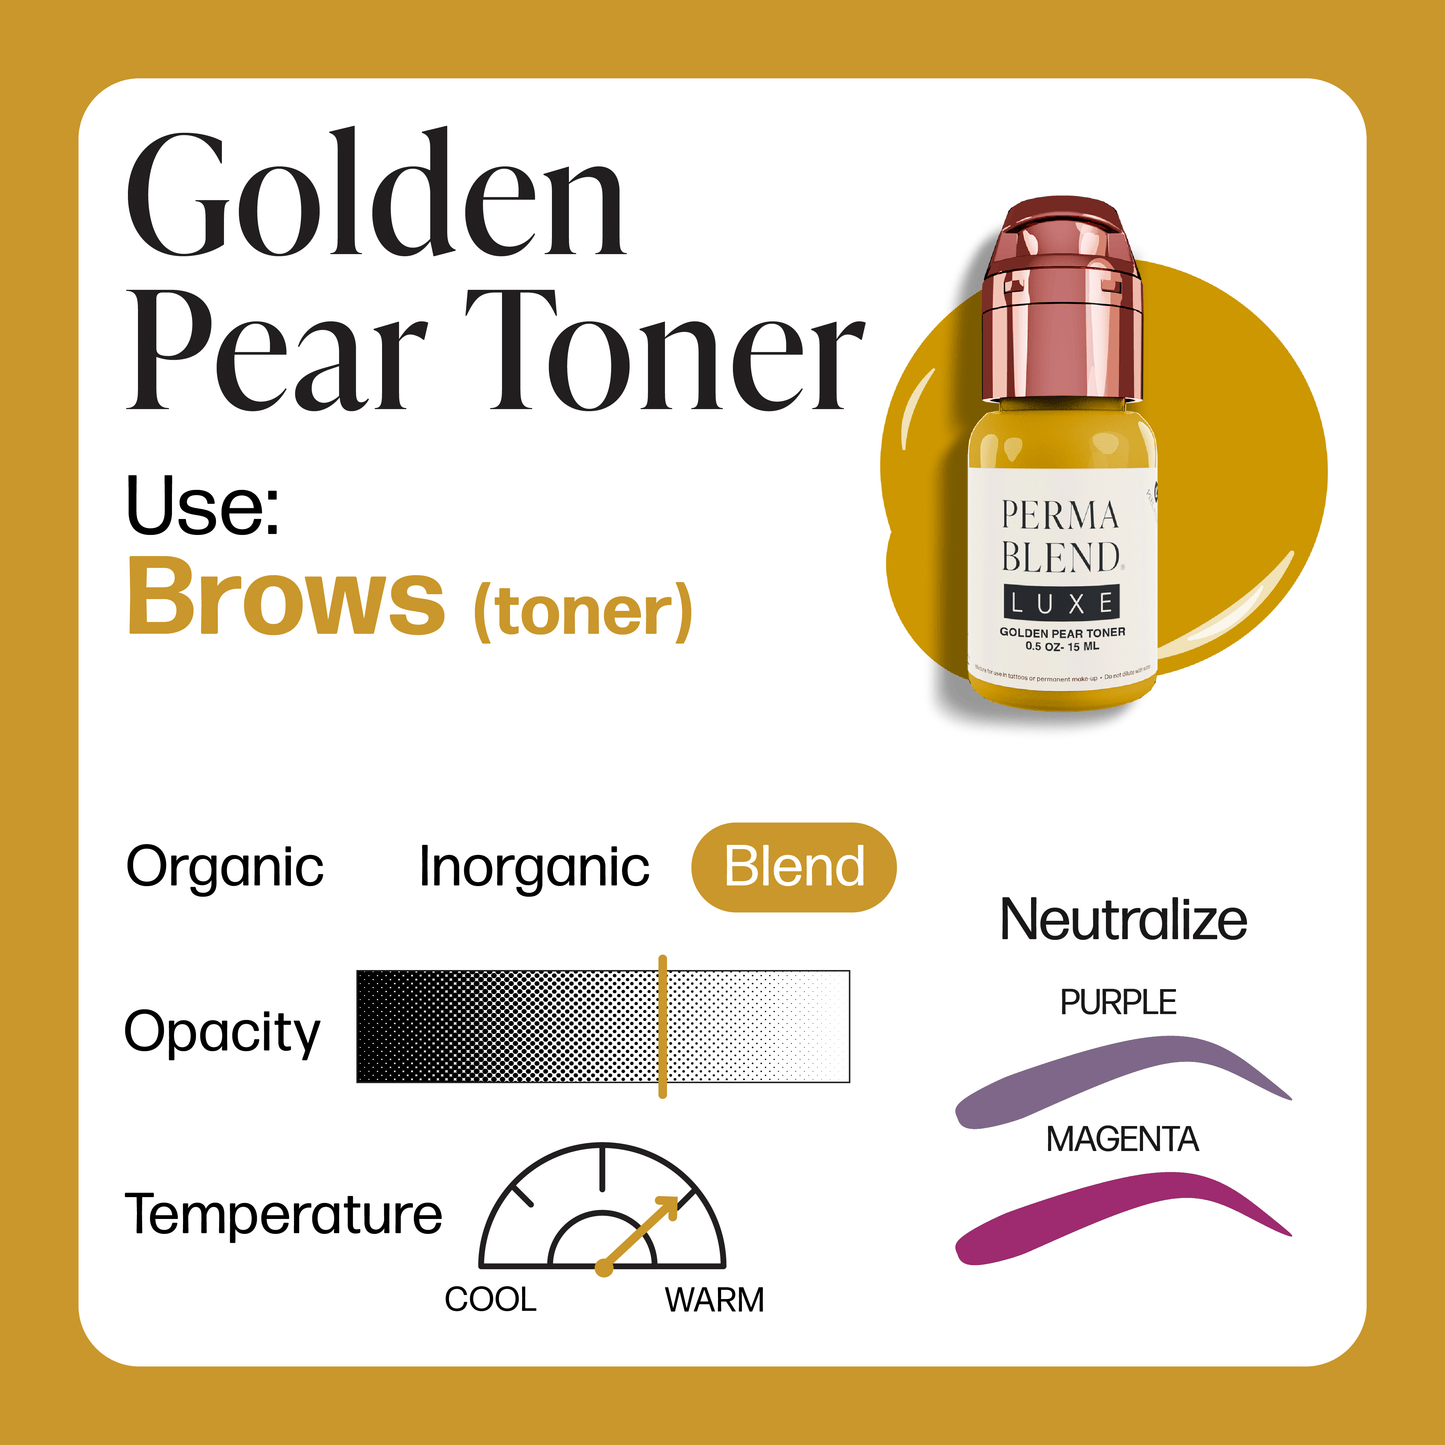 LUXE Golden Pear Toner